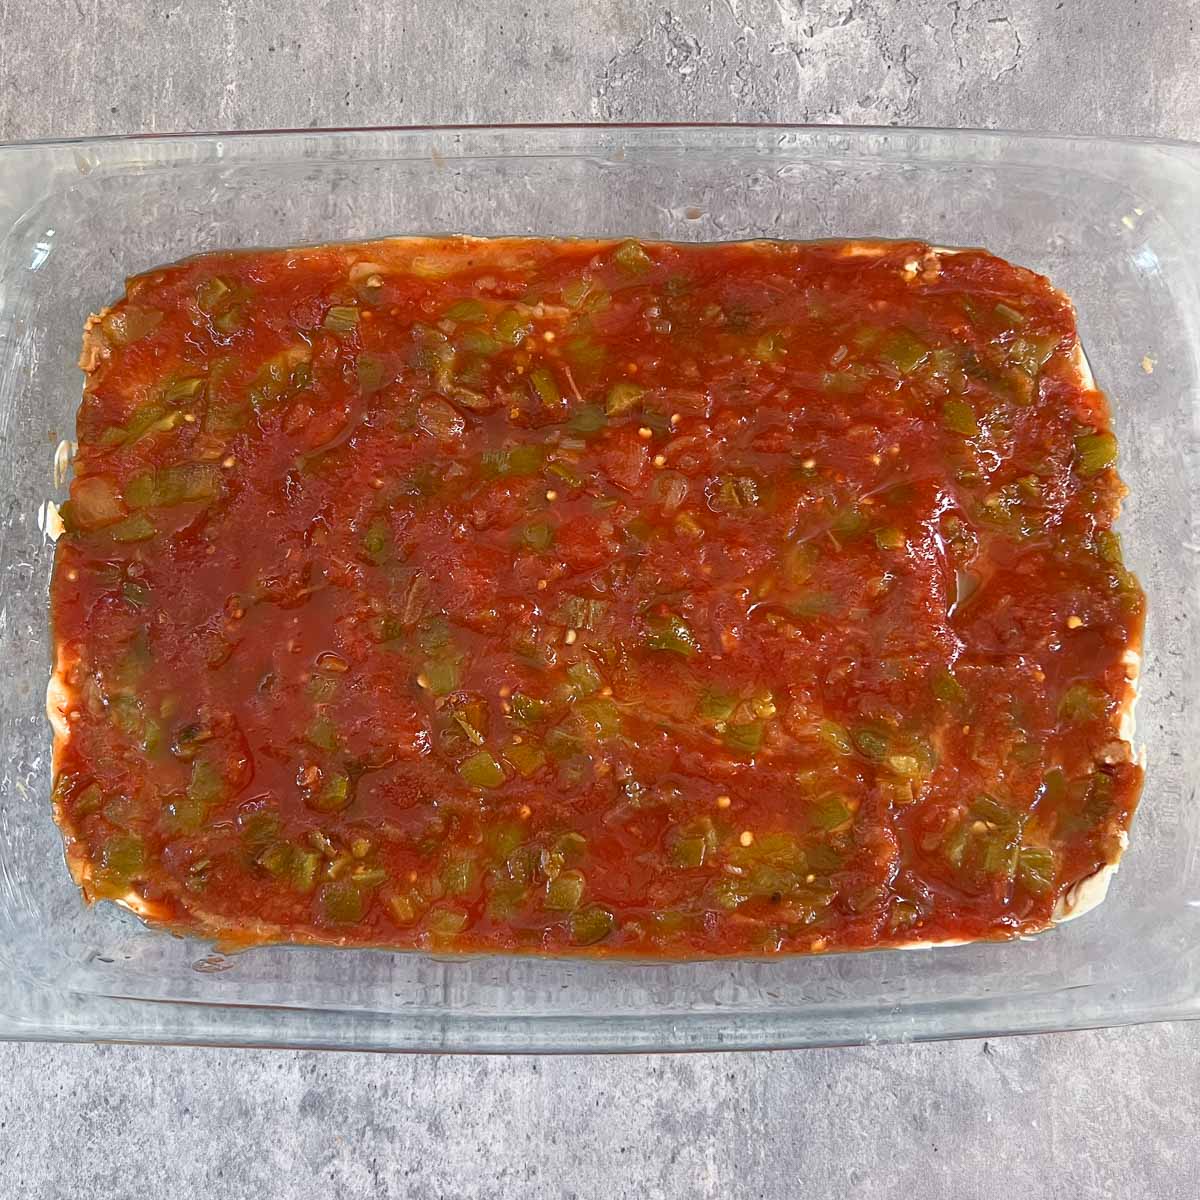 salsa layer of Mexican bean dip